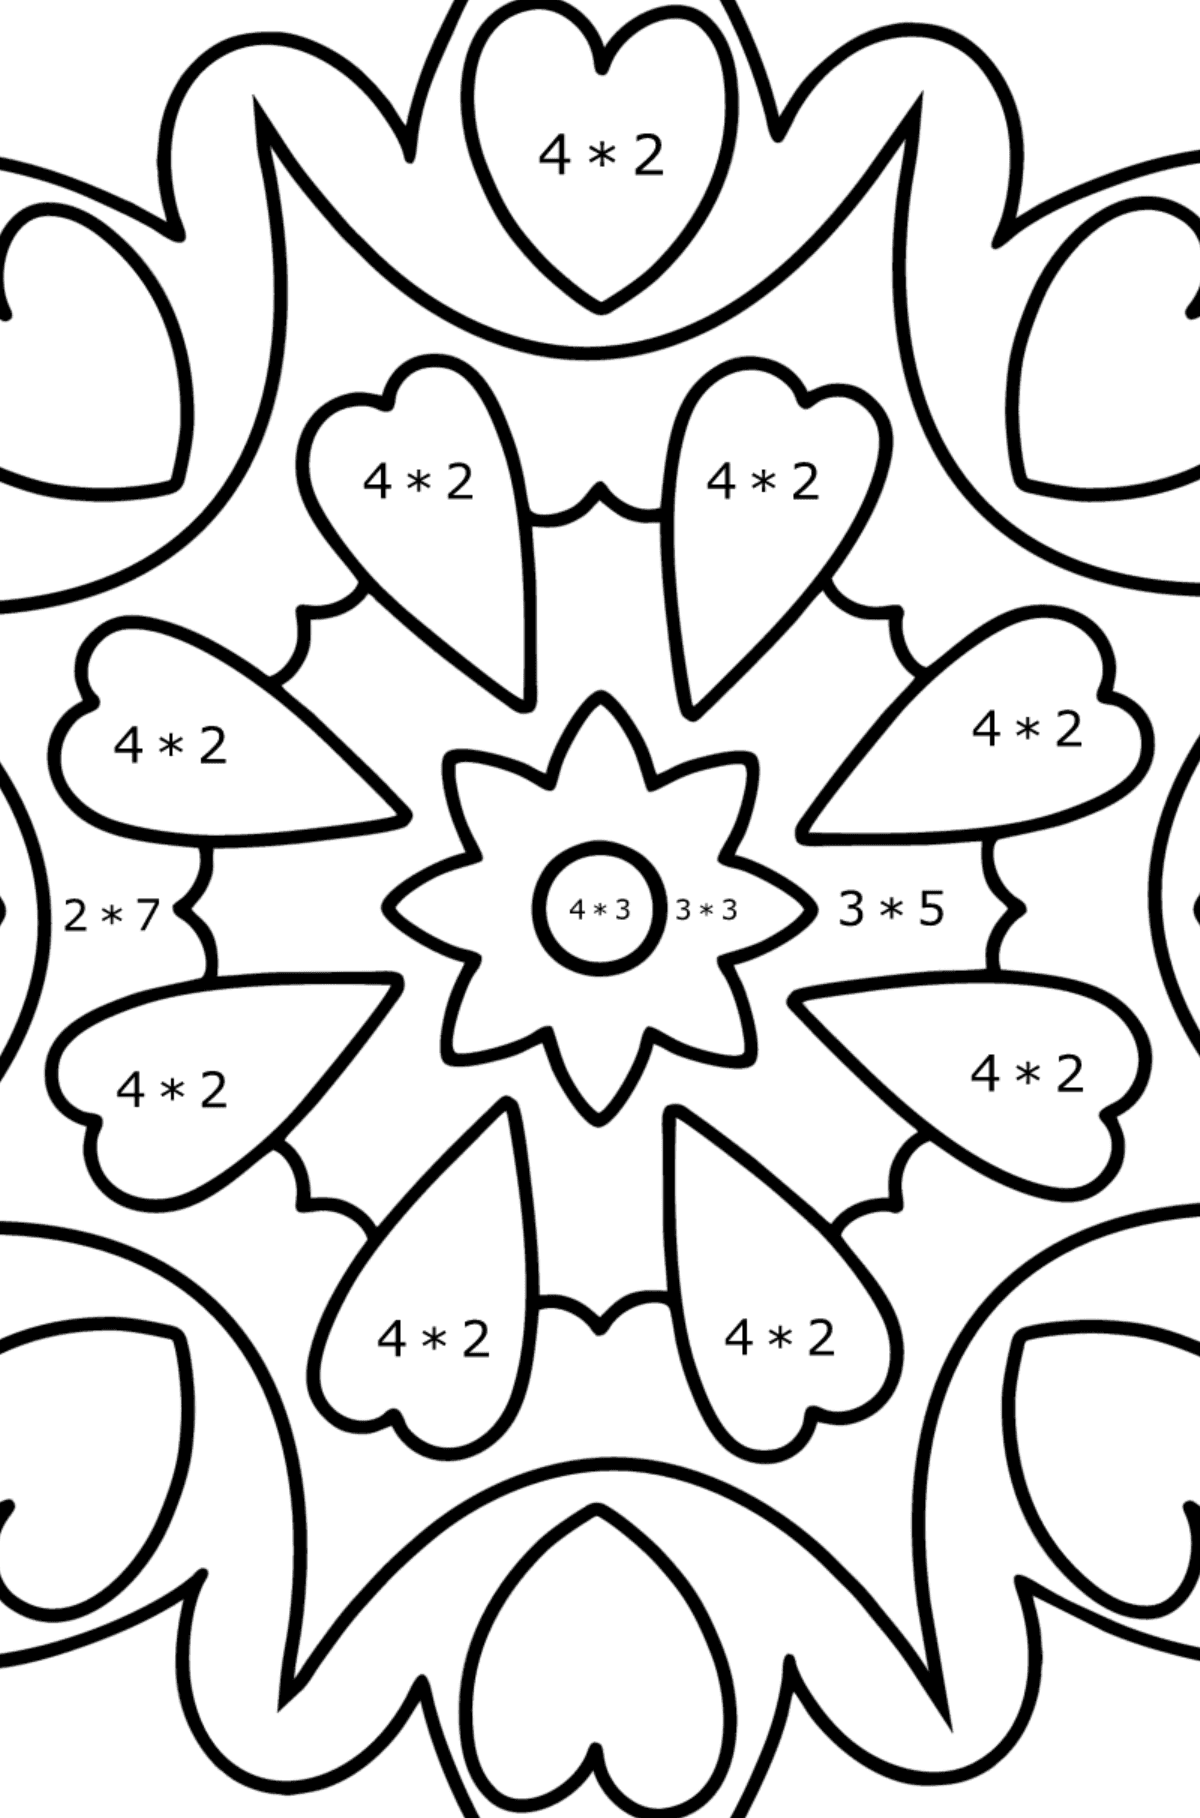 Desenho para colorir Mandala - 21 elementos - Colorindo com Matemática - Multiplicação para Crianças